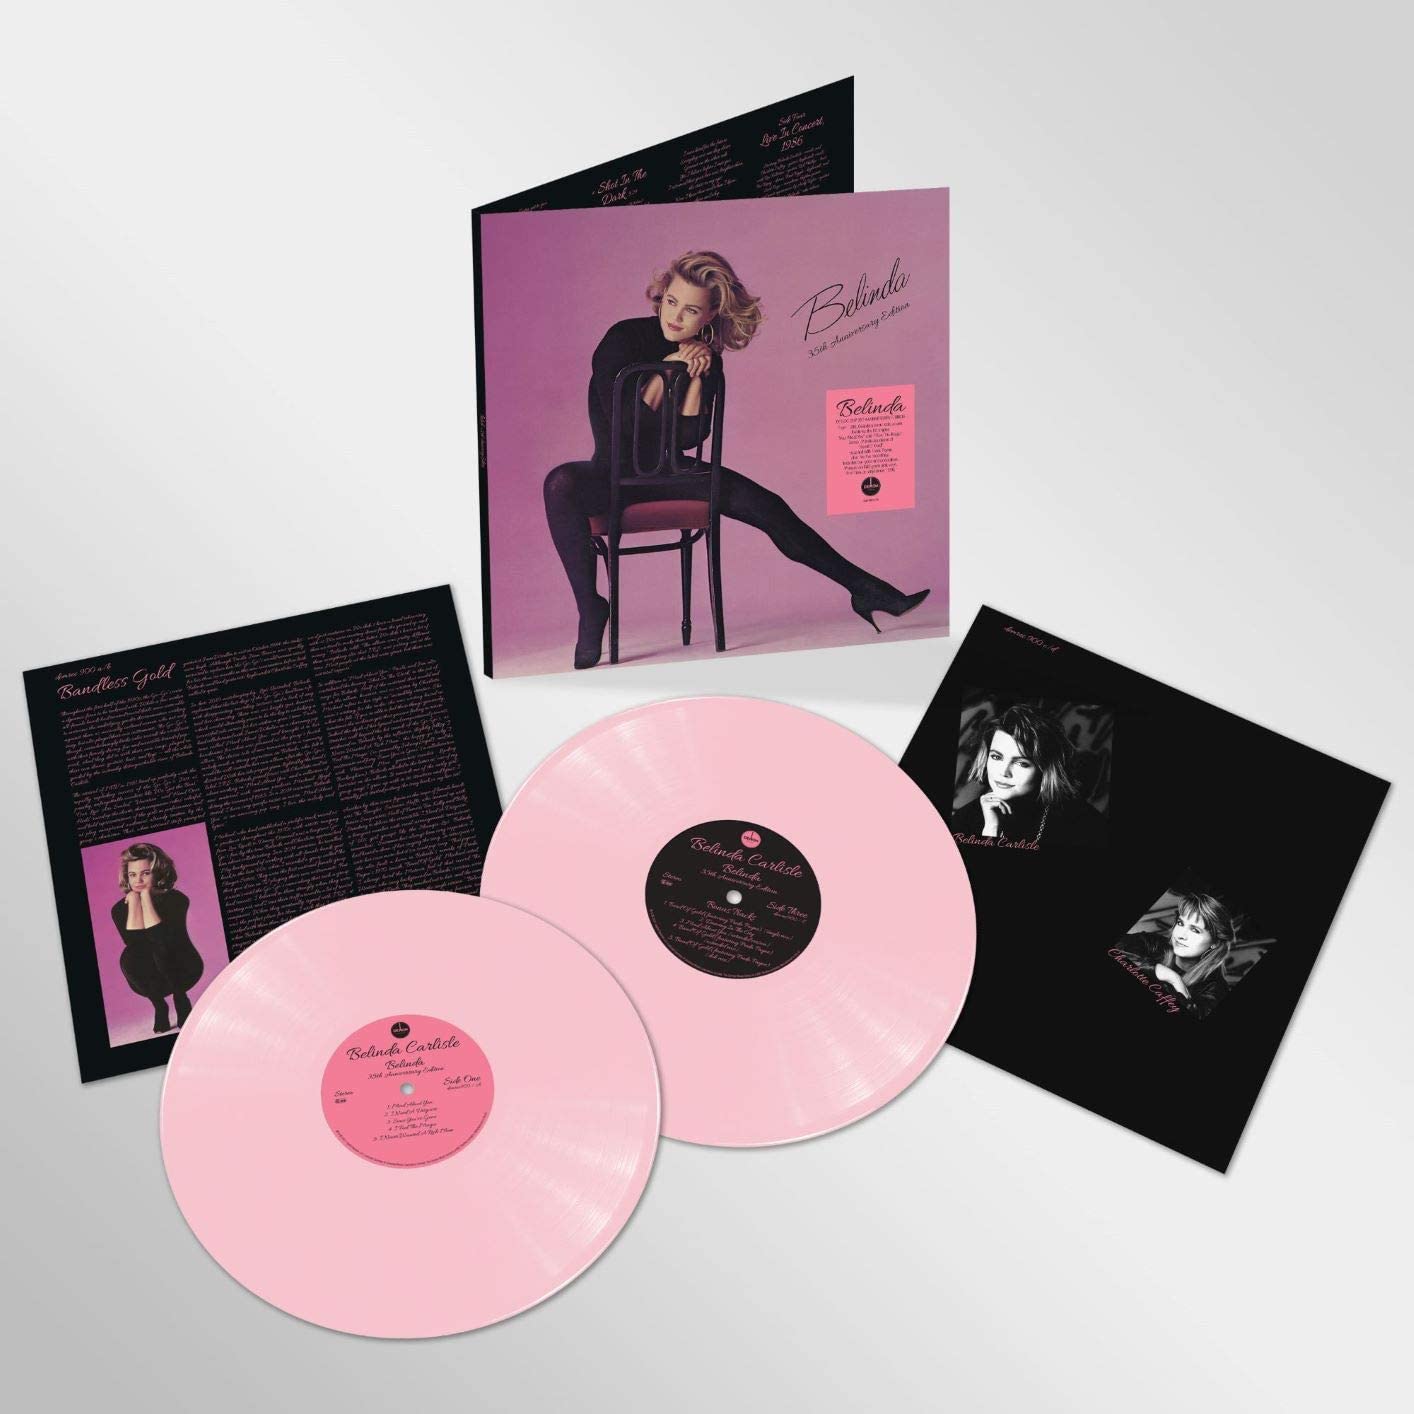 Belinda Carlisle deluxe vinyl reissues – SuperDeluxeEdition